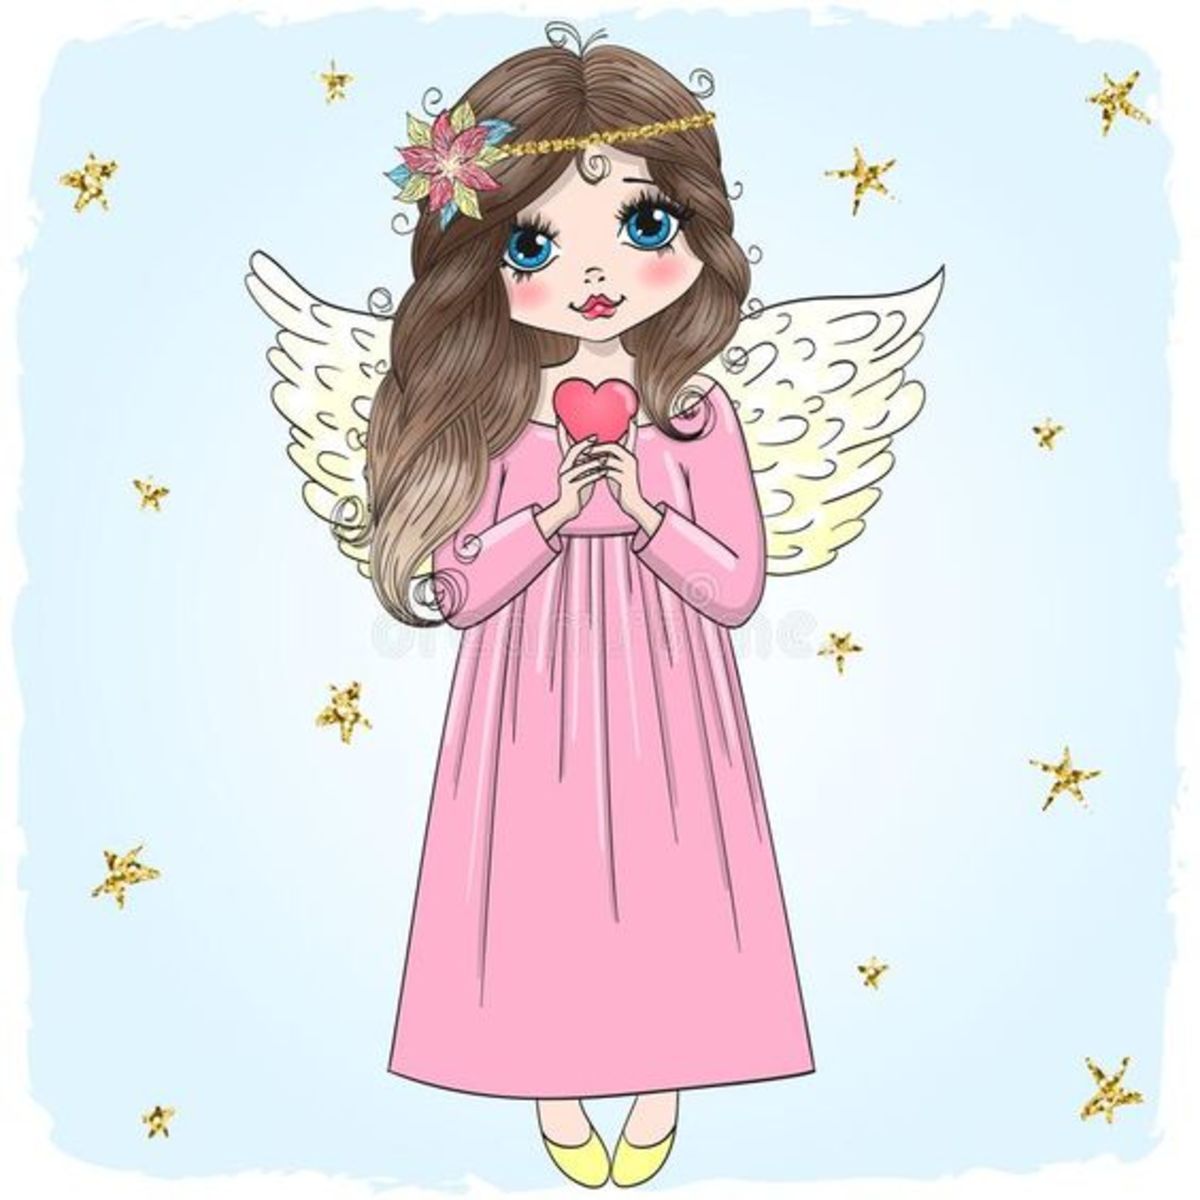 A Good Hearted Fairy